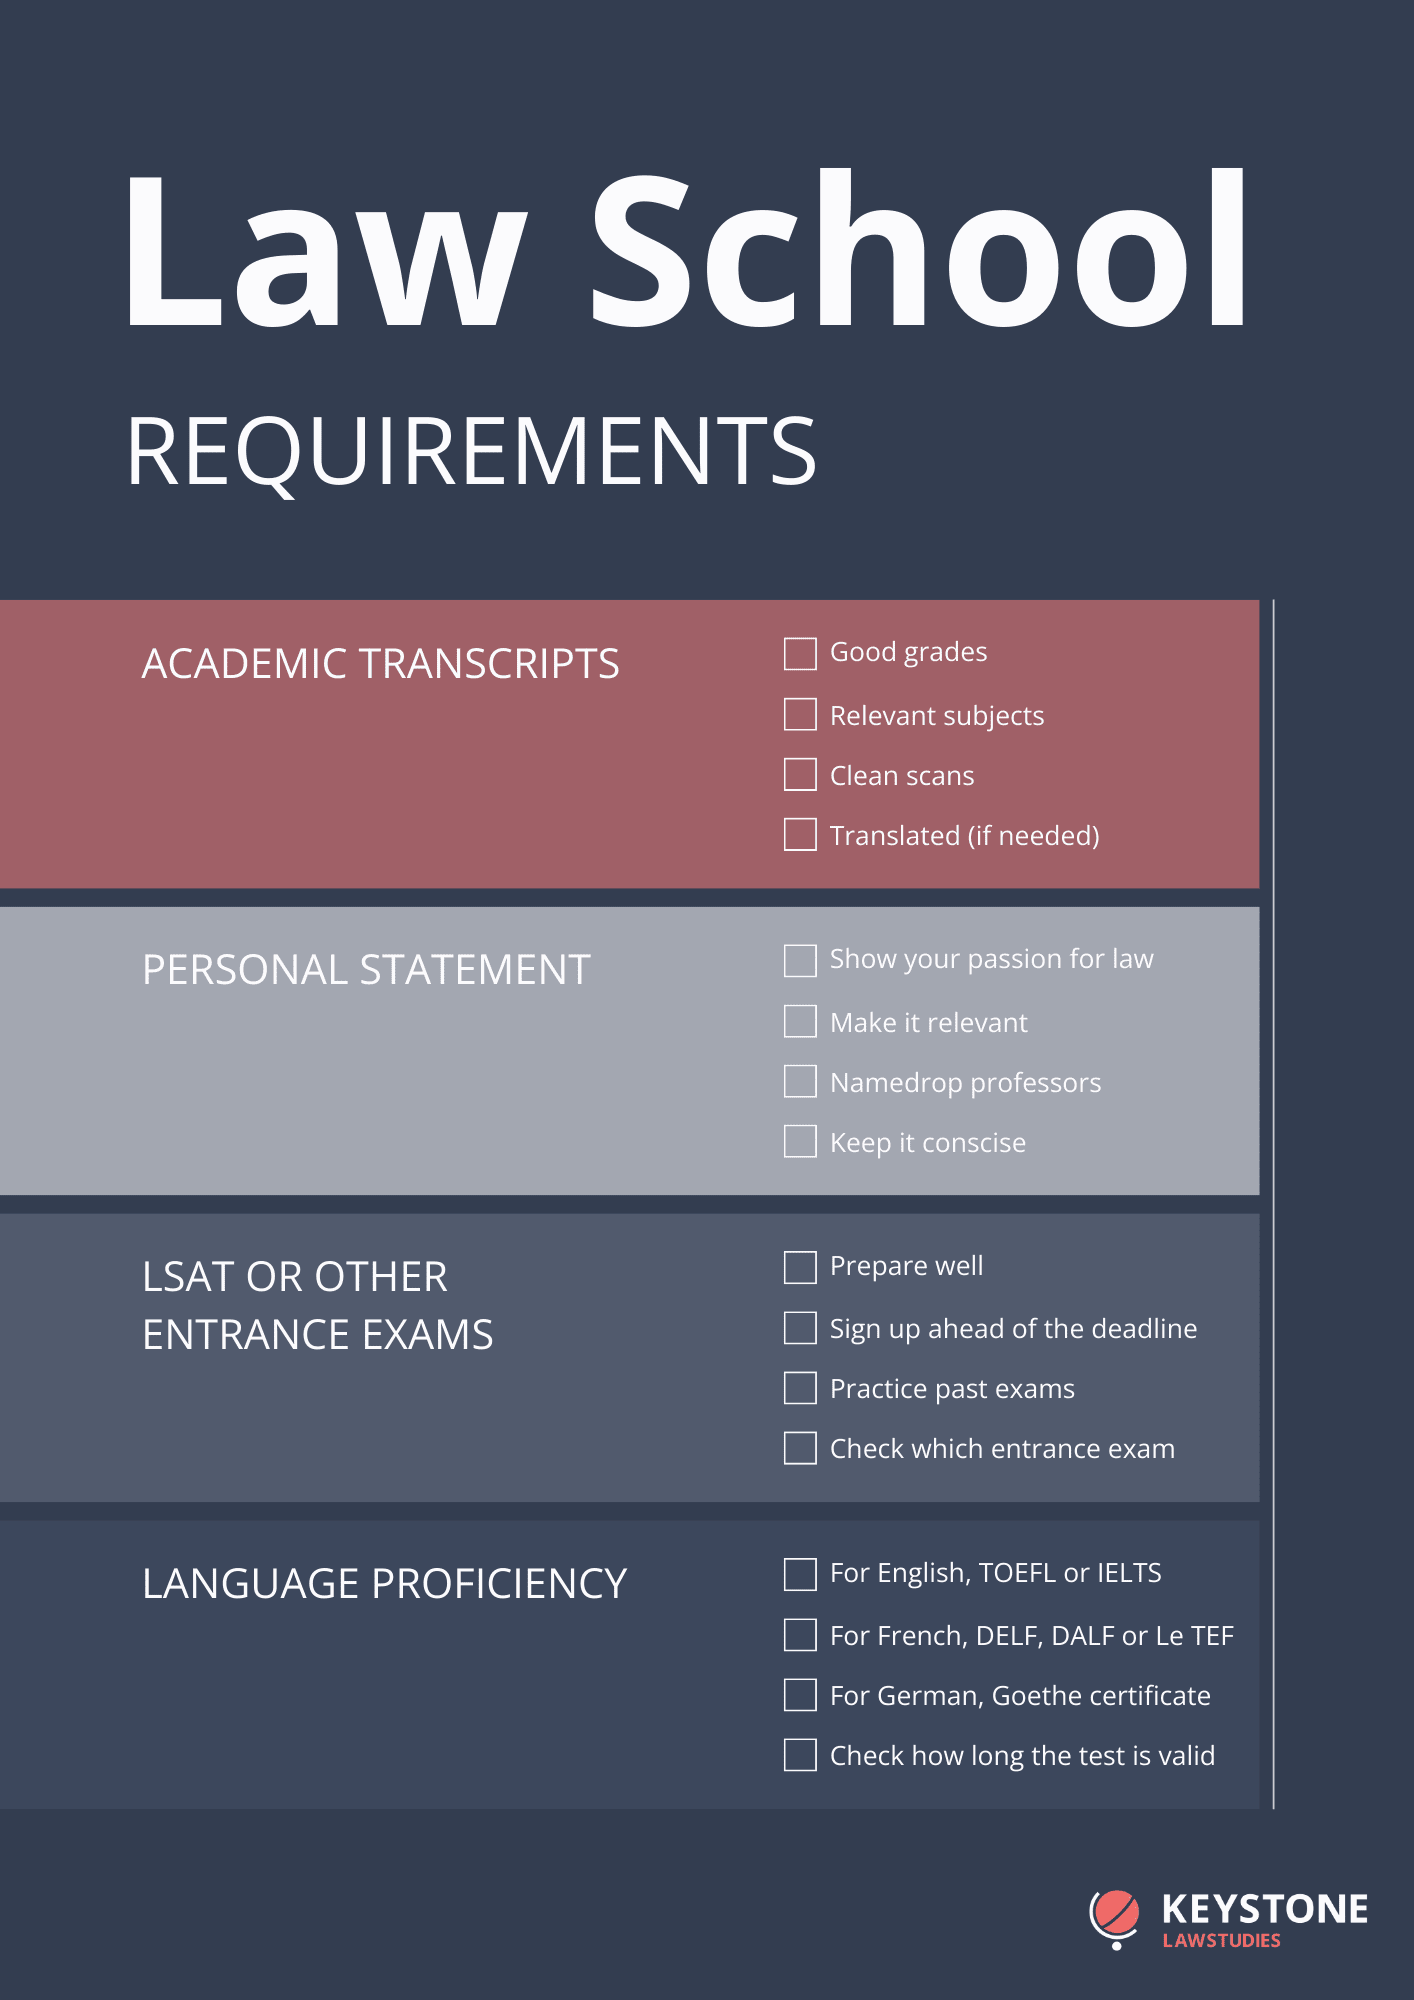 Law school requirements - checklist